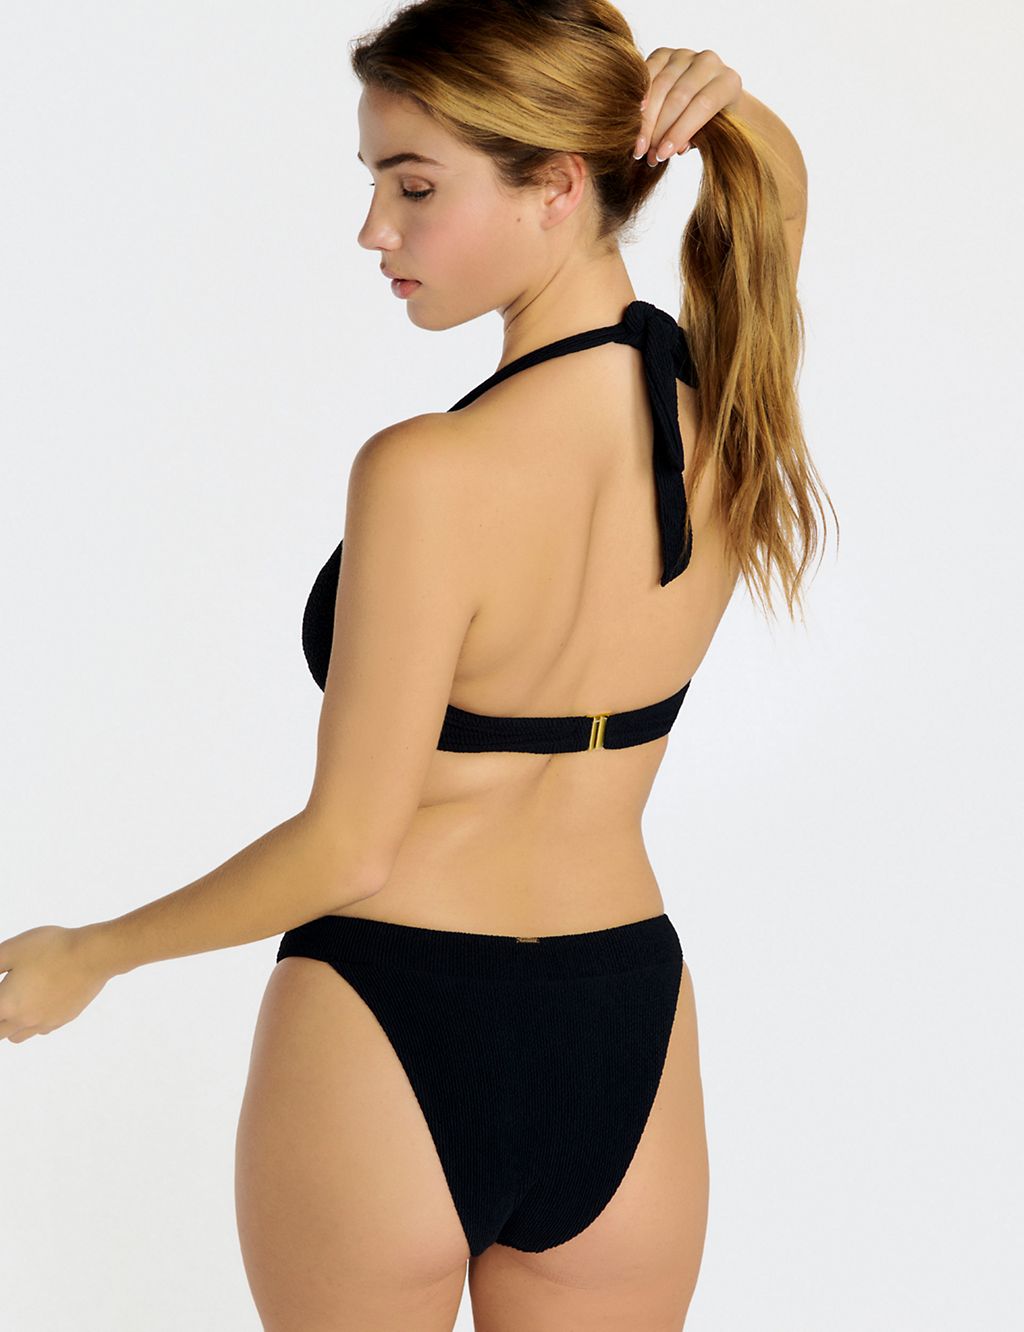 Sorrento Wired Padded Halterneck Bikini Top 2 of 5